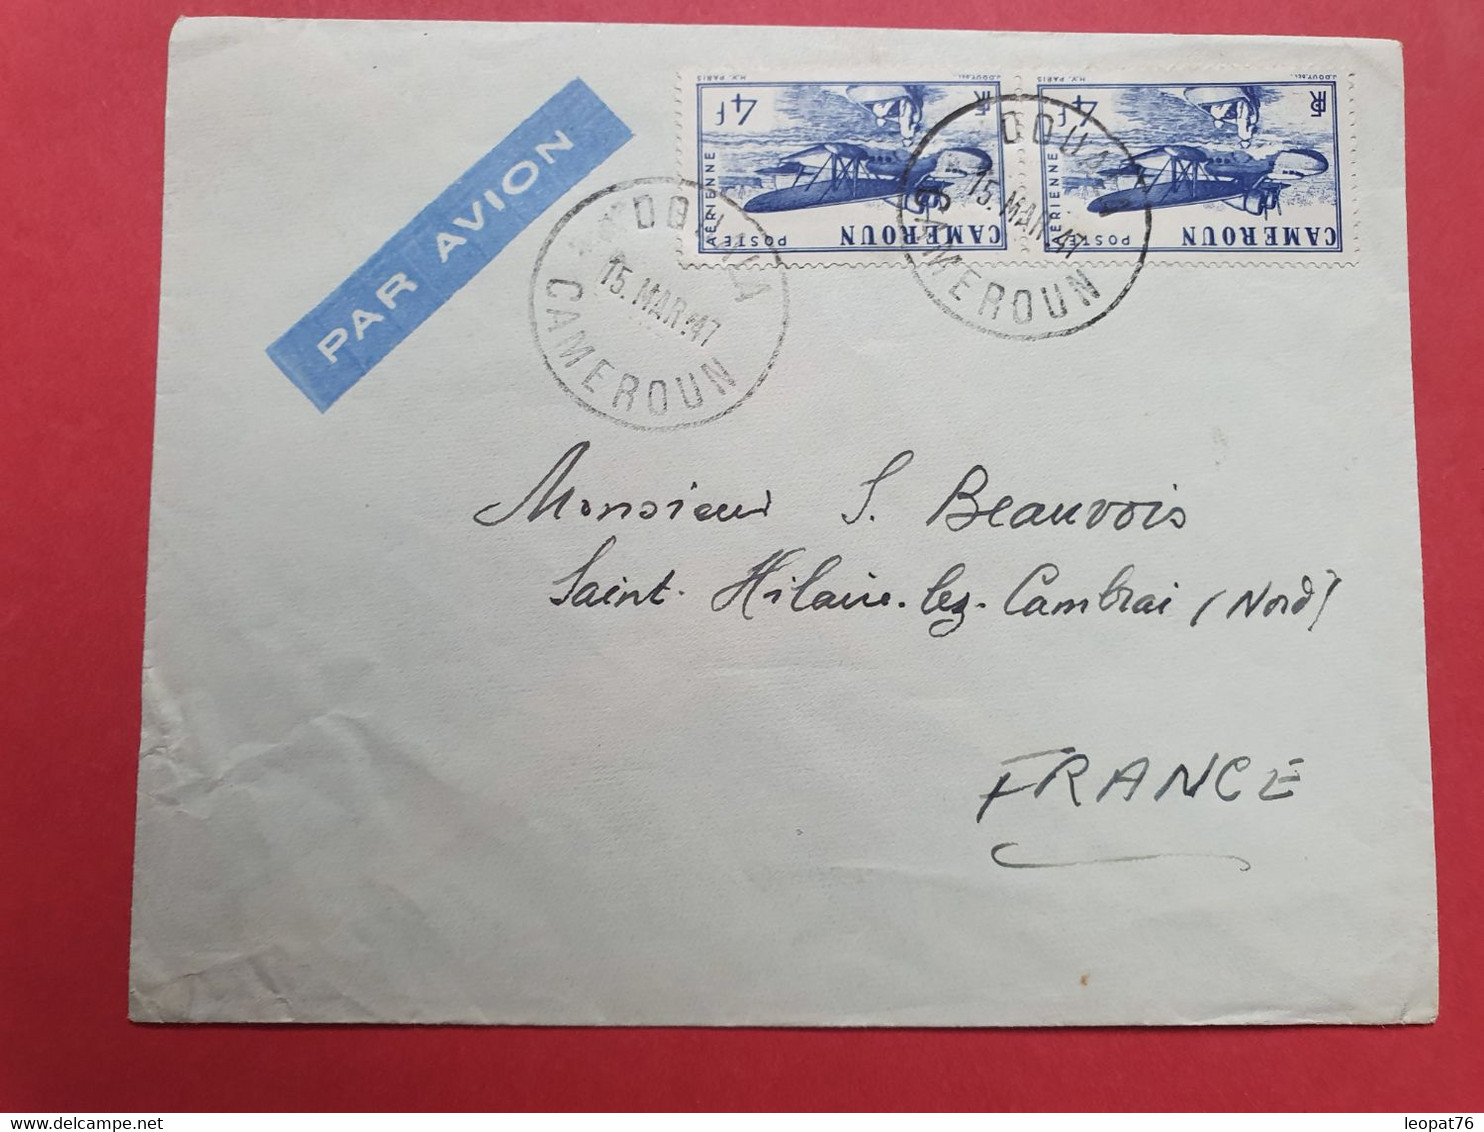 Cameroun - Enveloppe De Douala Pour La France En 1947 - N 33 - Lettres & Documents